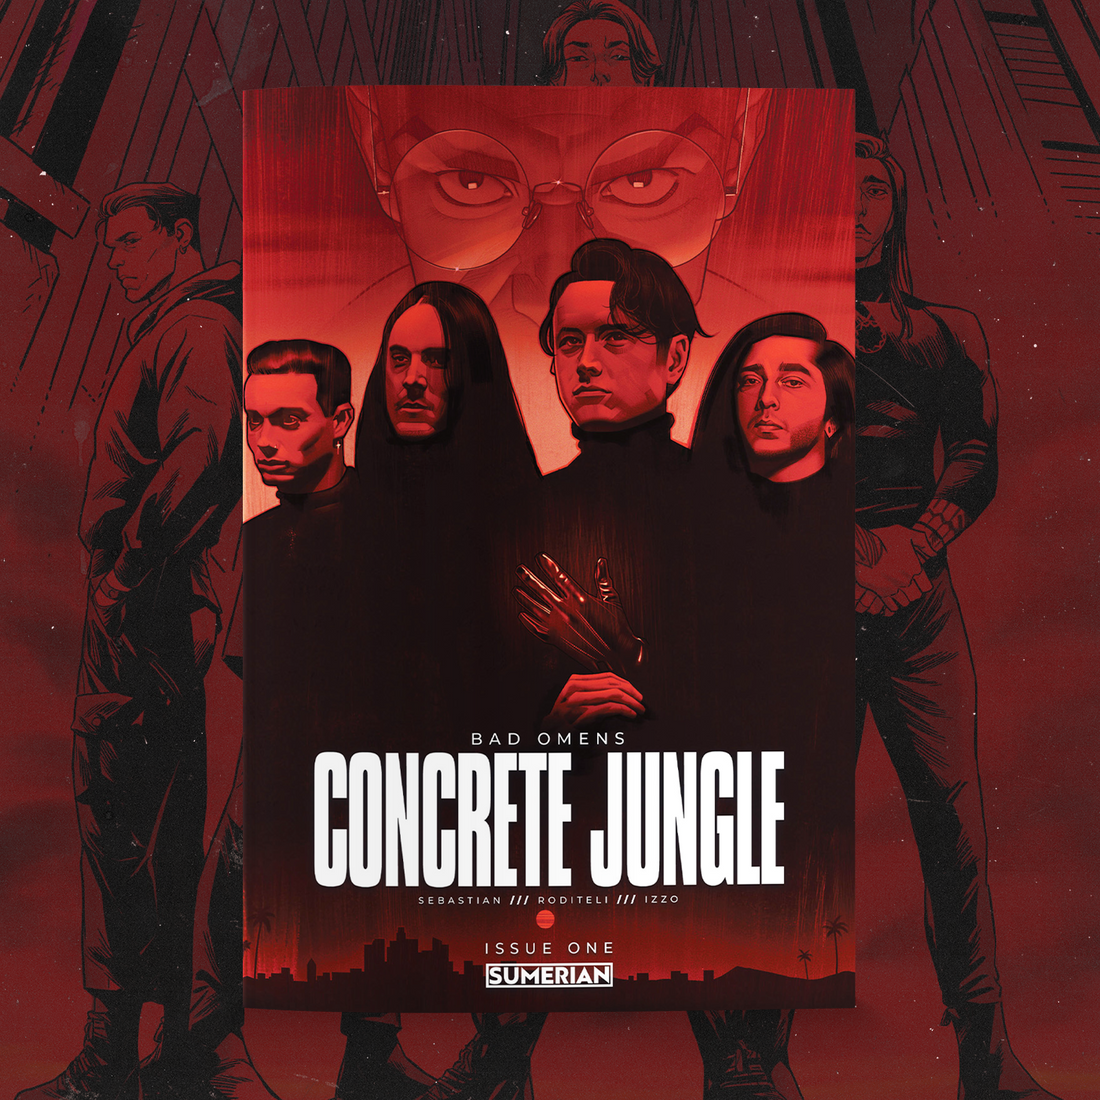 Bad Omens: Concrete Jungle #1